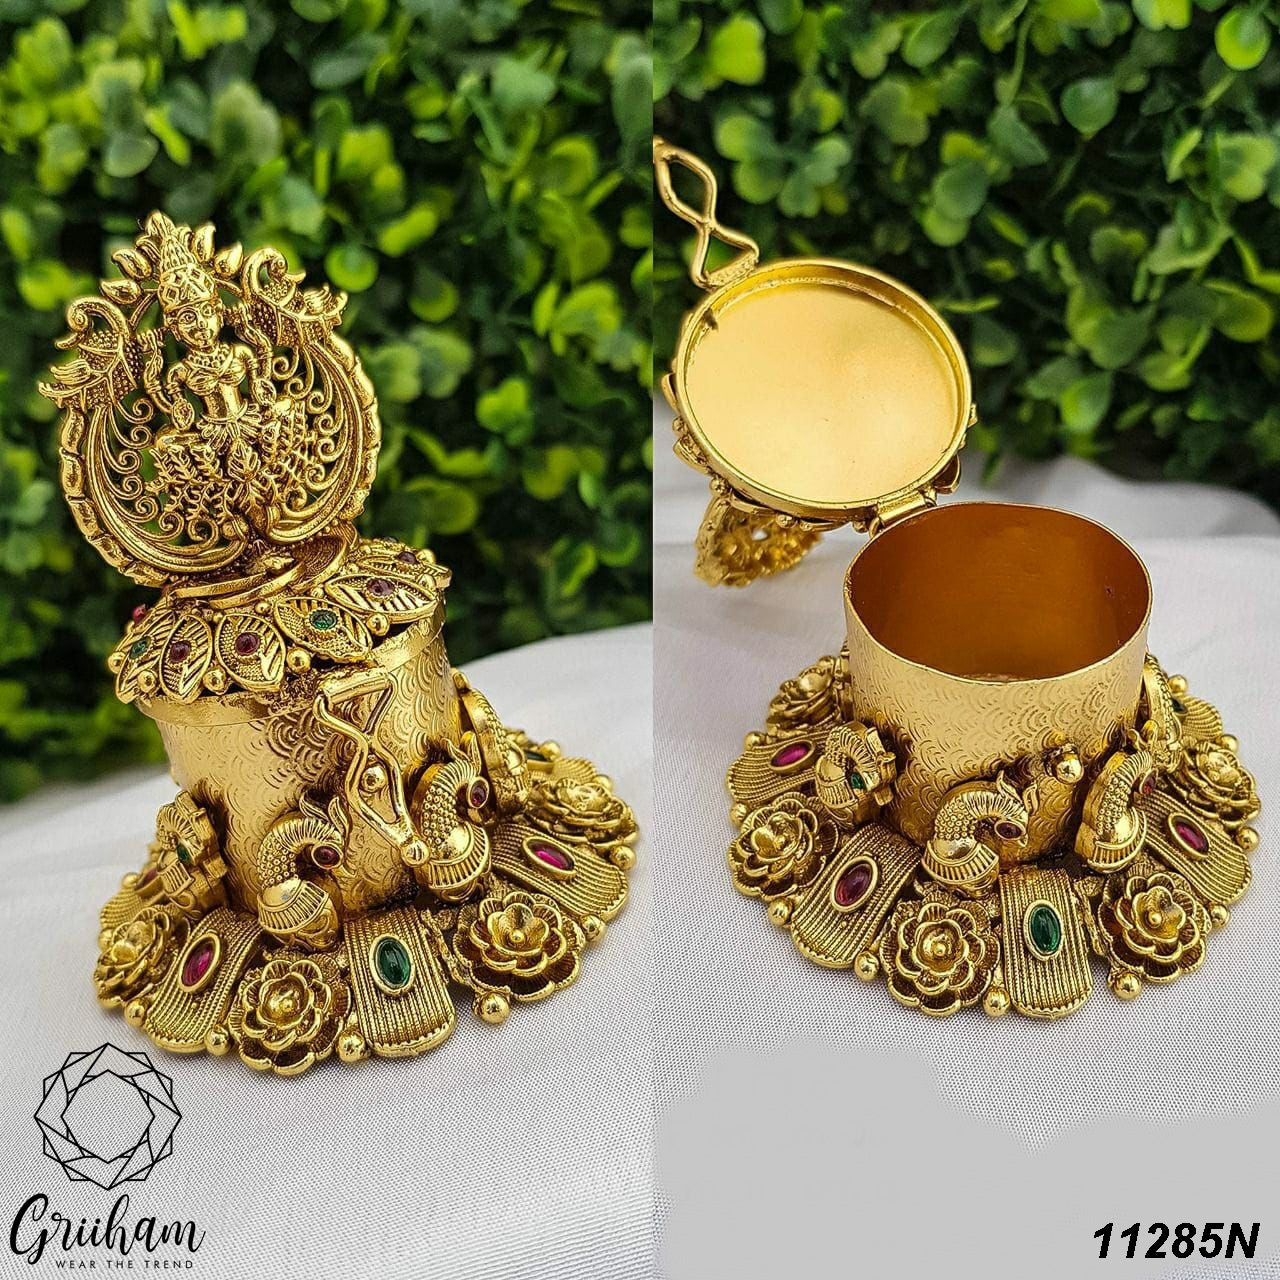 22k Gold Plated fully engraved Lakshmi Kumkum box 11285N